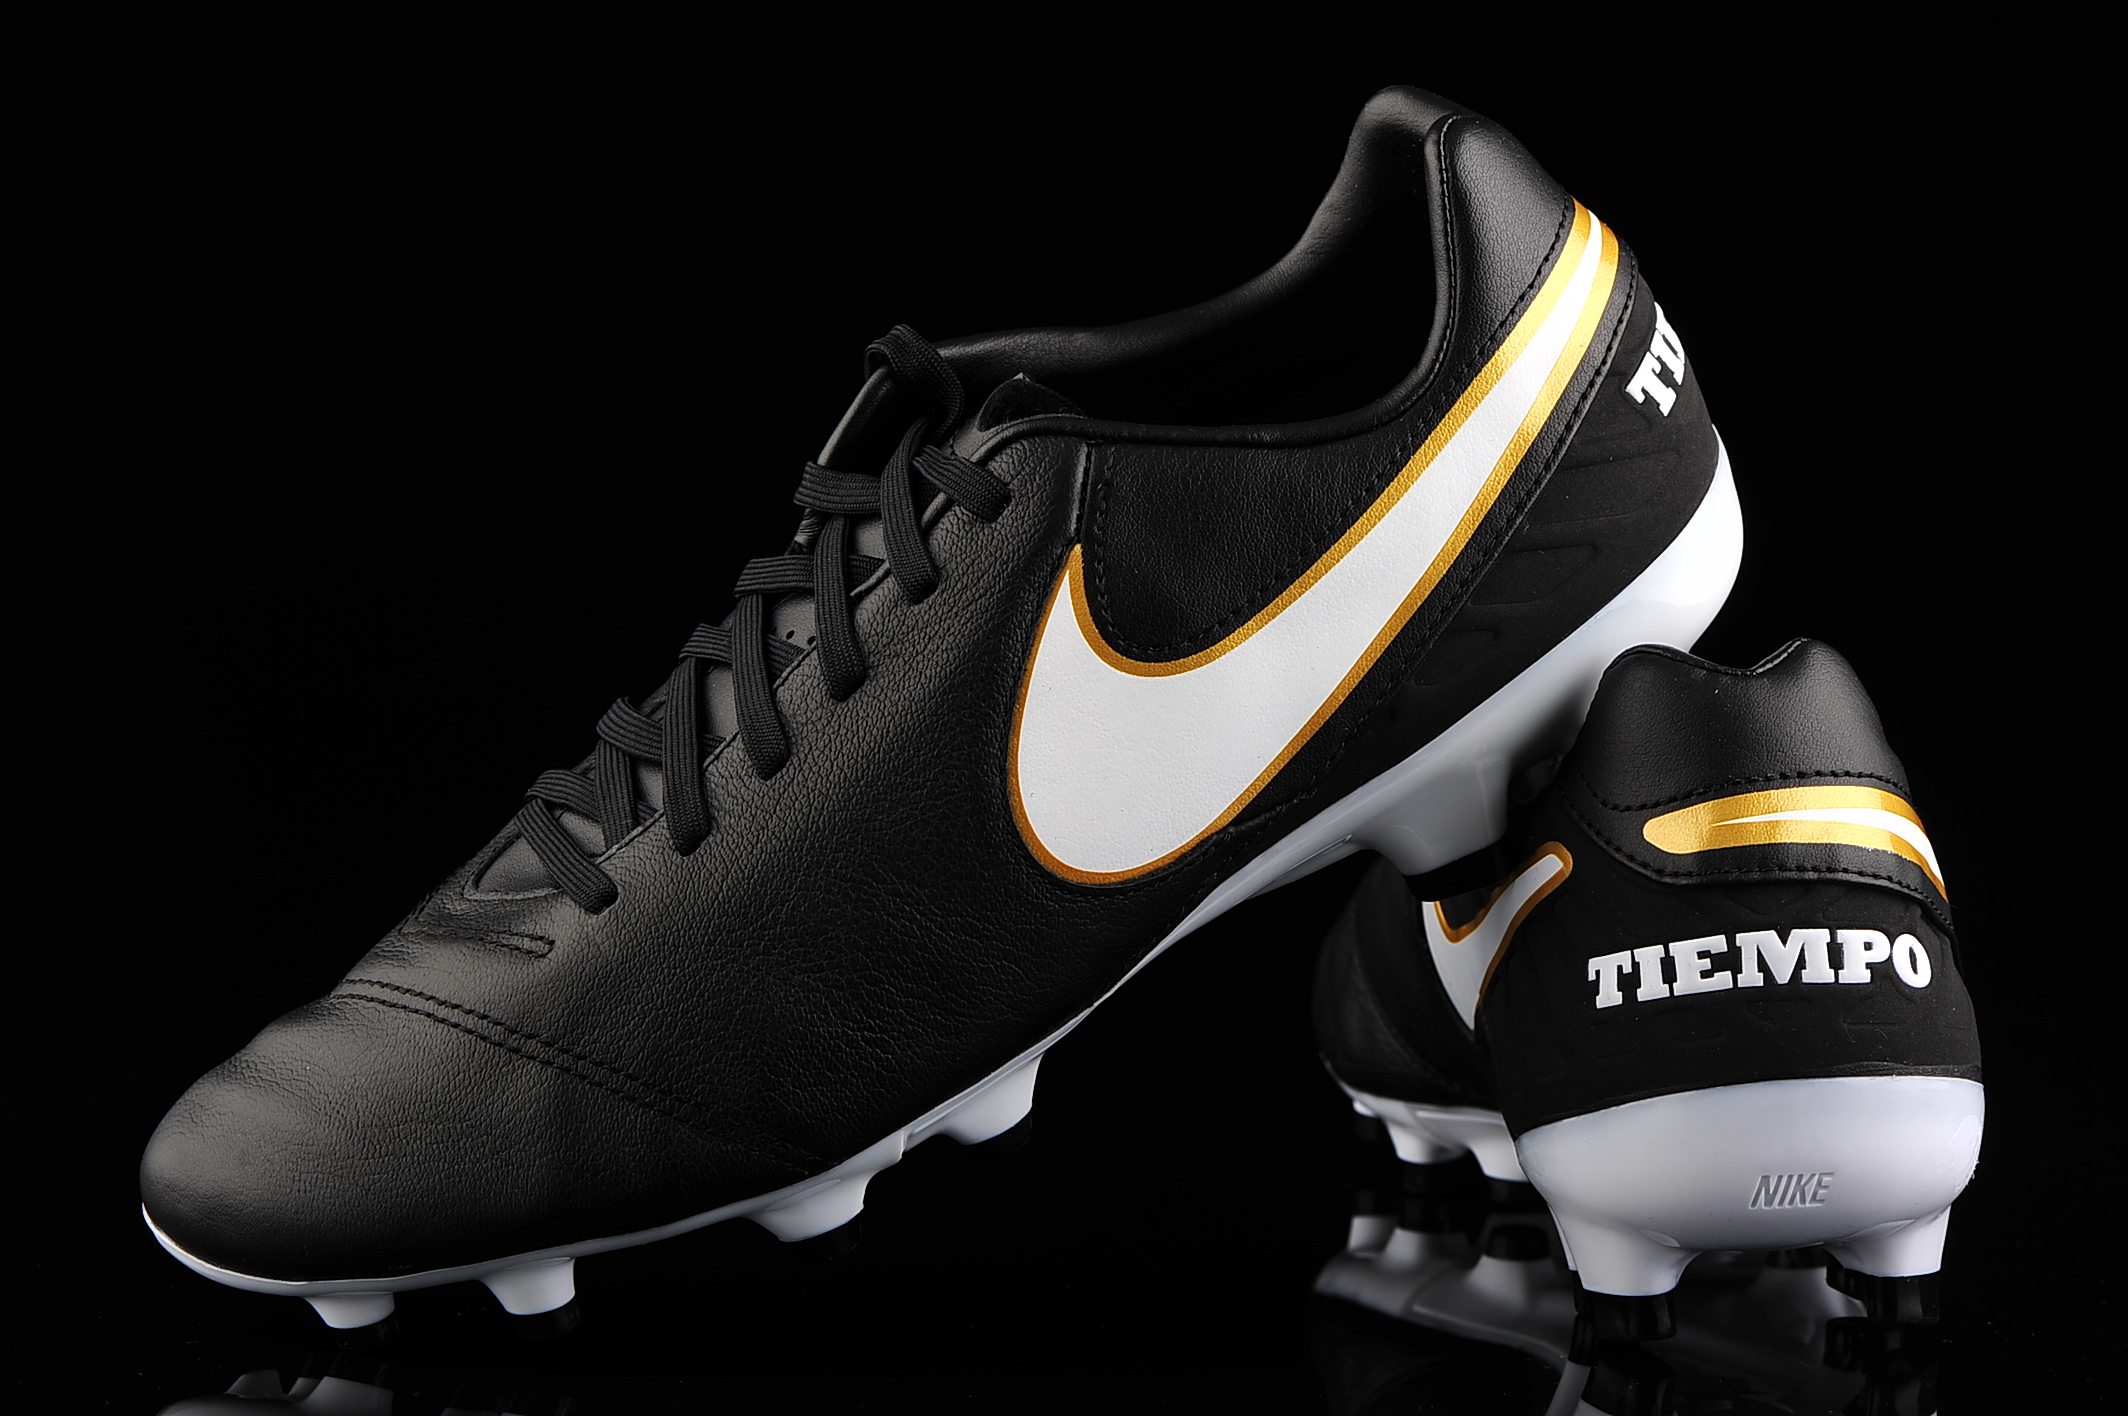 Nike Tiempo Mystic FG 819236-010 | R-GOL.com - Football boots & equipment